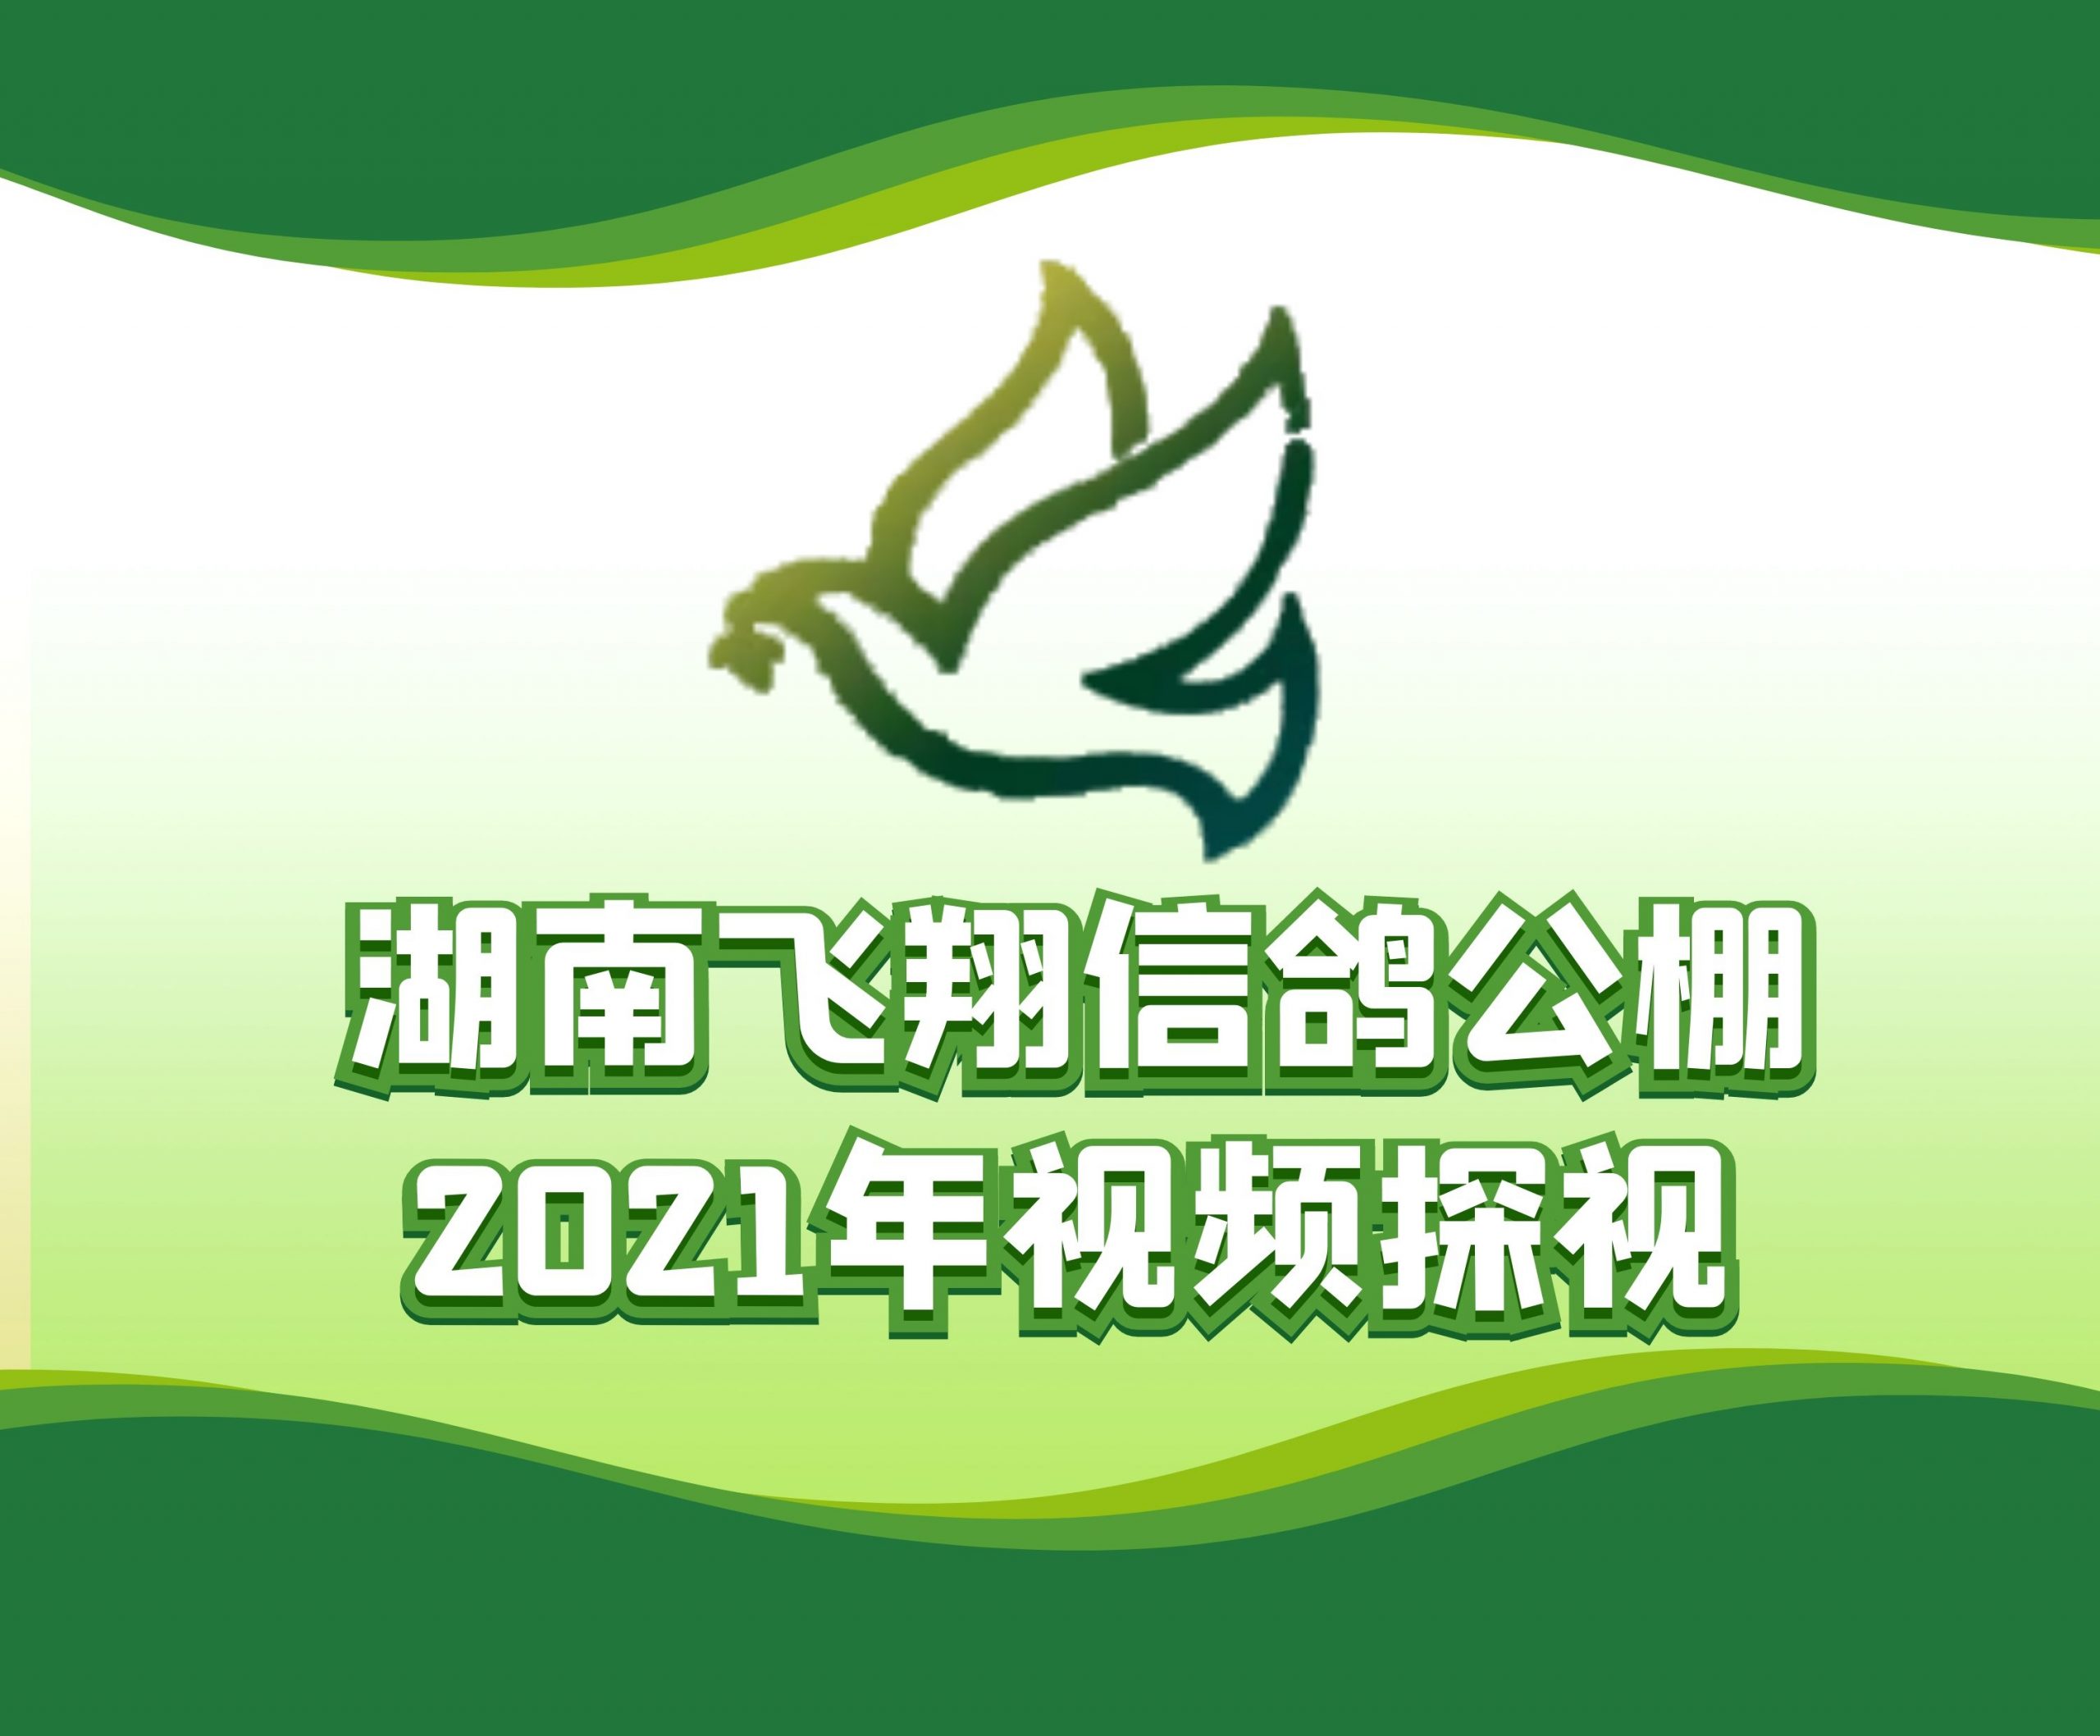 吴色华-2021-19-0361326